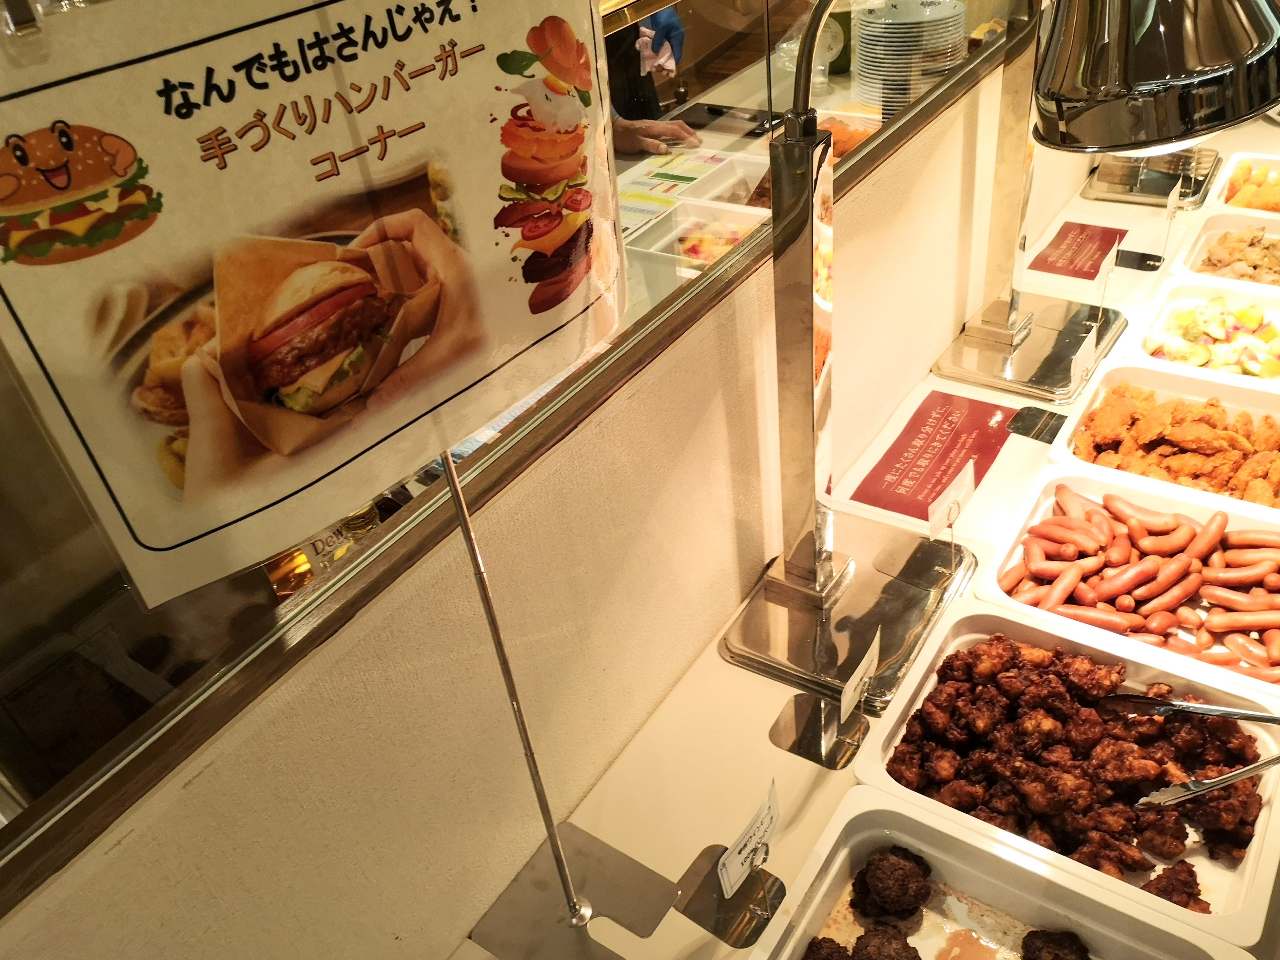 山梨県韮崎市・「シャトレーゼホテル にらさきの森」、「シャトレーゼ体感ツアー」夕食のハンバーガー作り